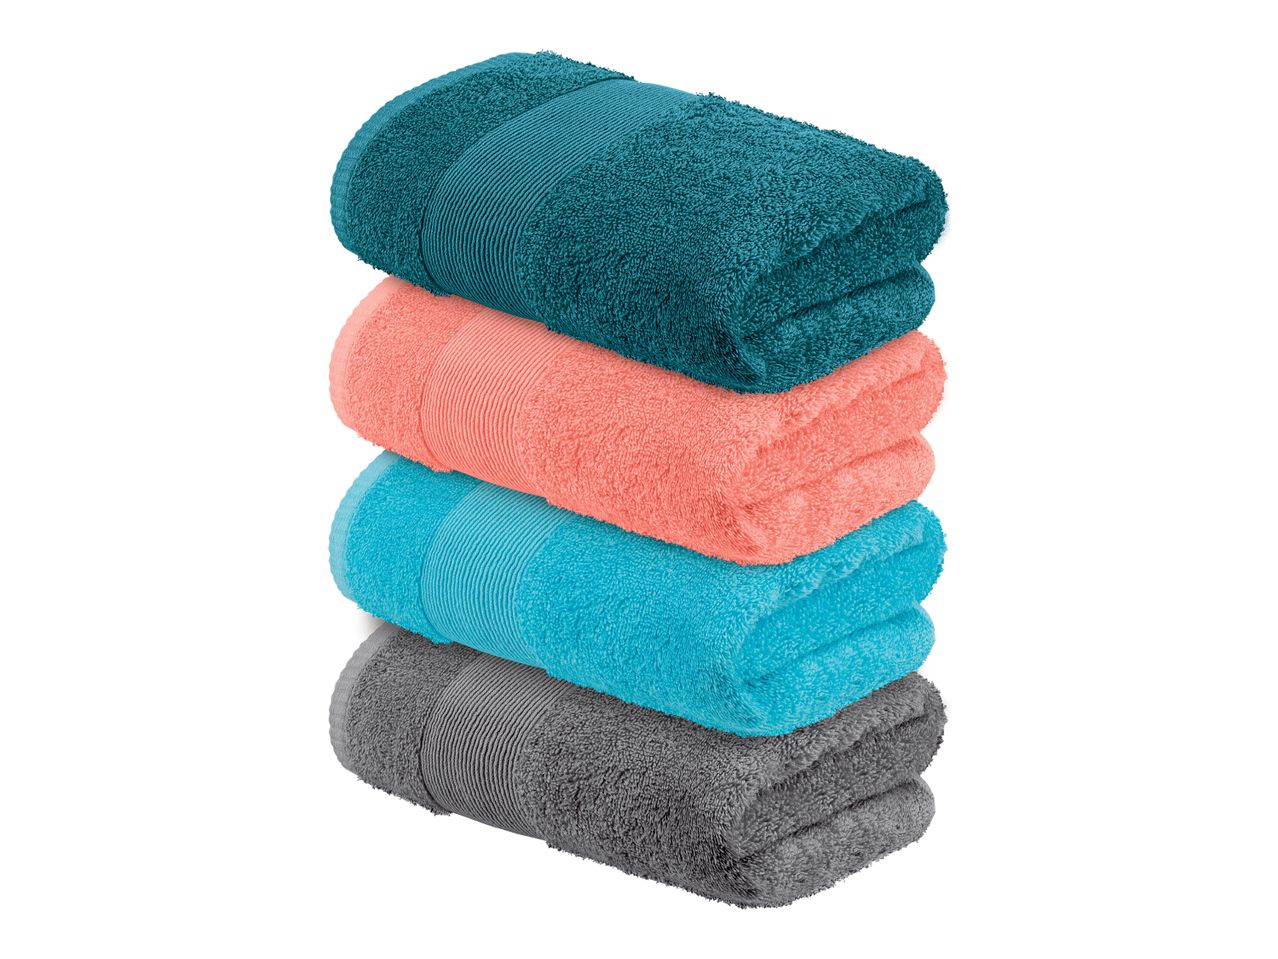 Asciugamano , prezzo 7.99 EUR  
Asciugamano  50x100 cm, 2 pezzi  
-  Puro cotone